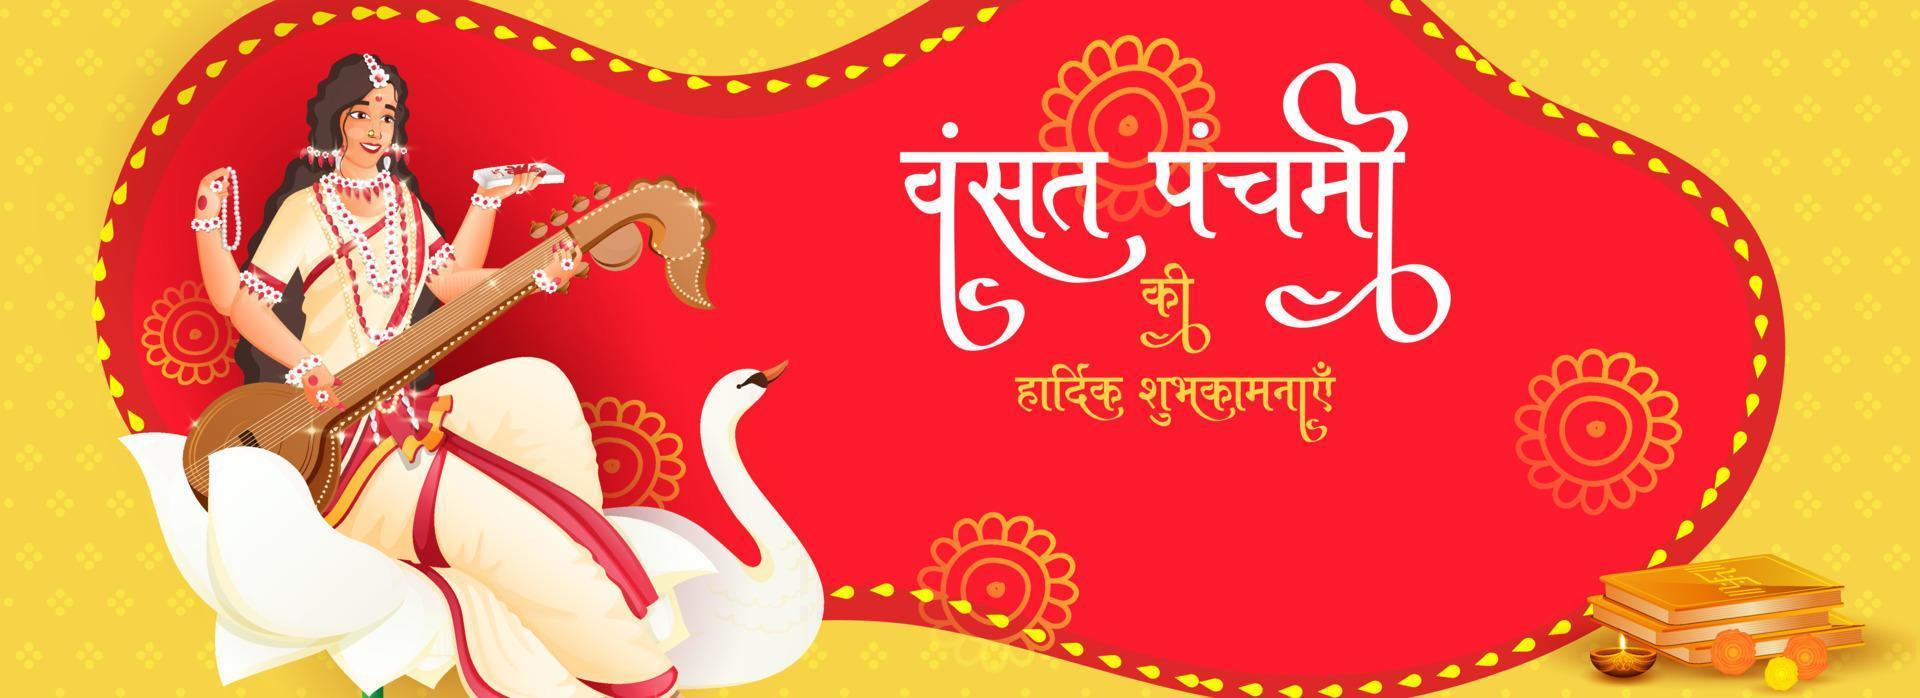 hindi texto melhor desejos do vasante panchami com deusa saraswati personagem às lótus flor, cisne pássaro em vermelho e amarelo fundo. vetor